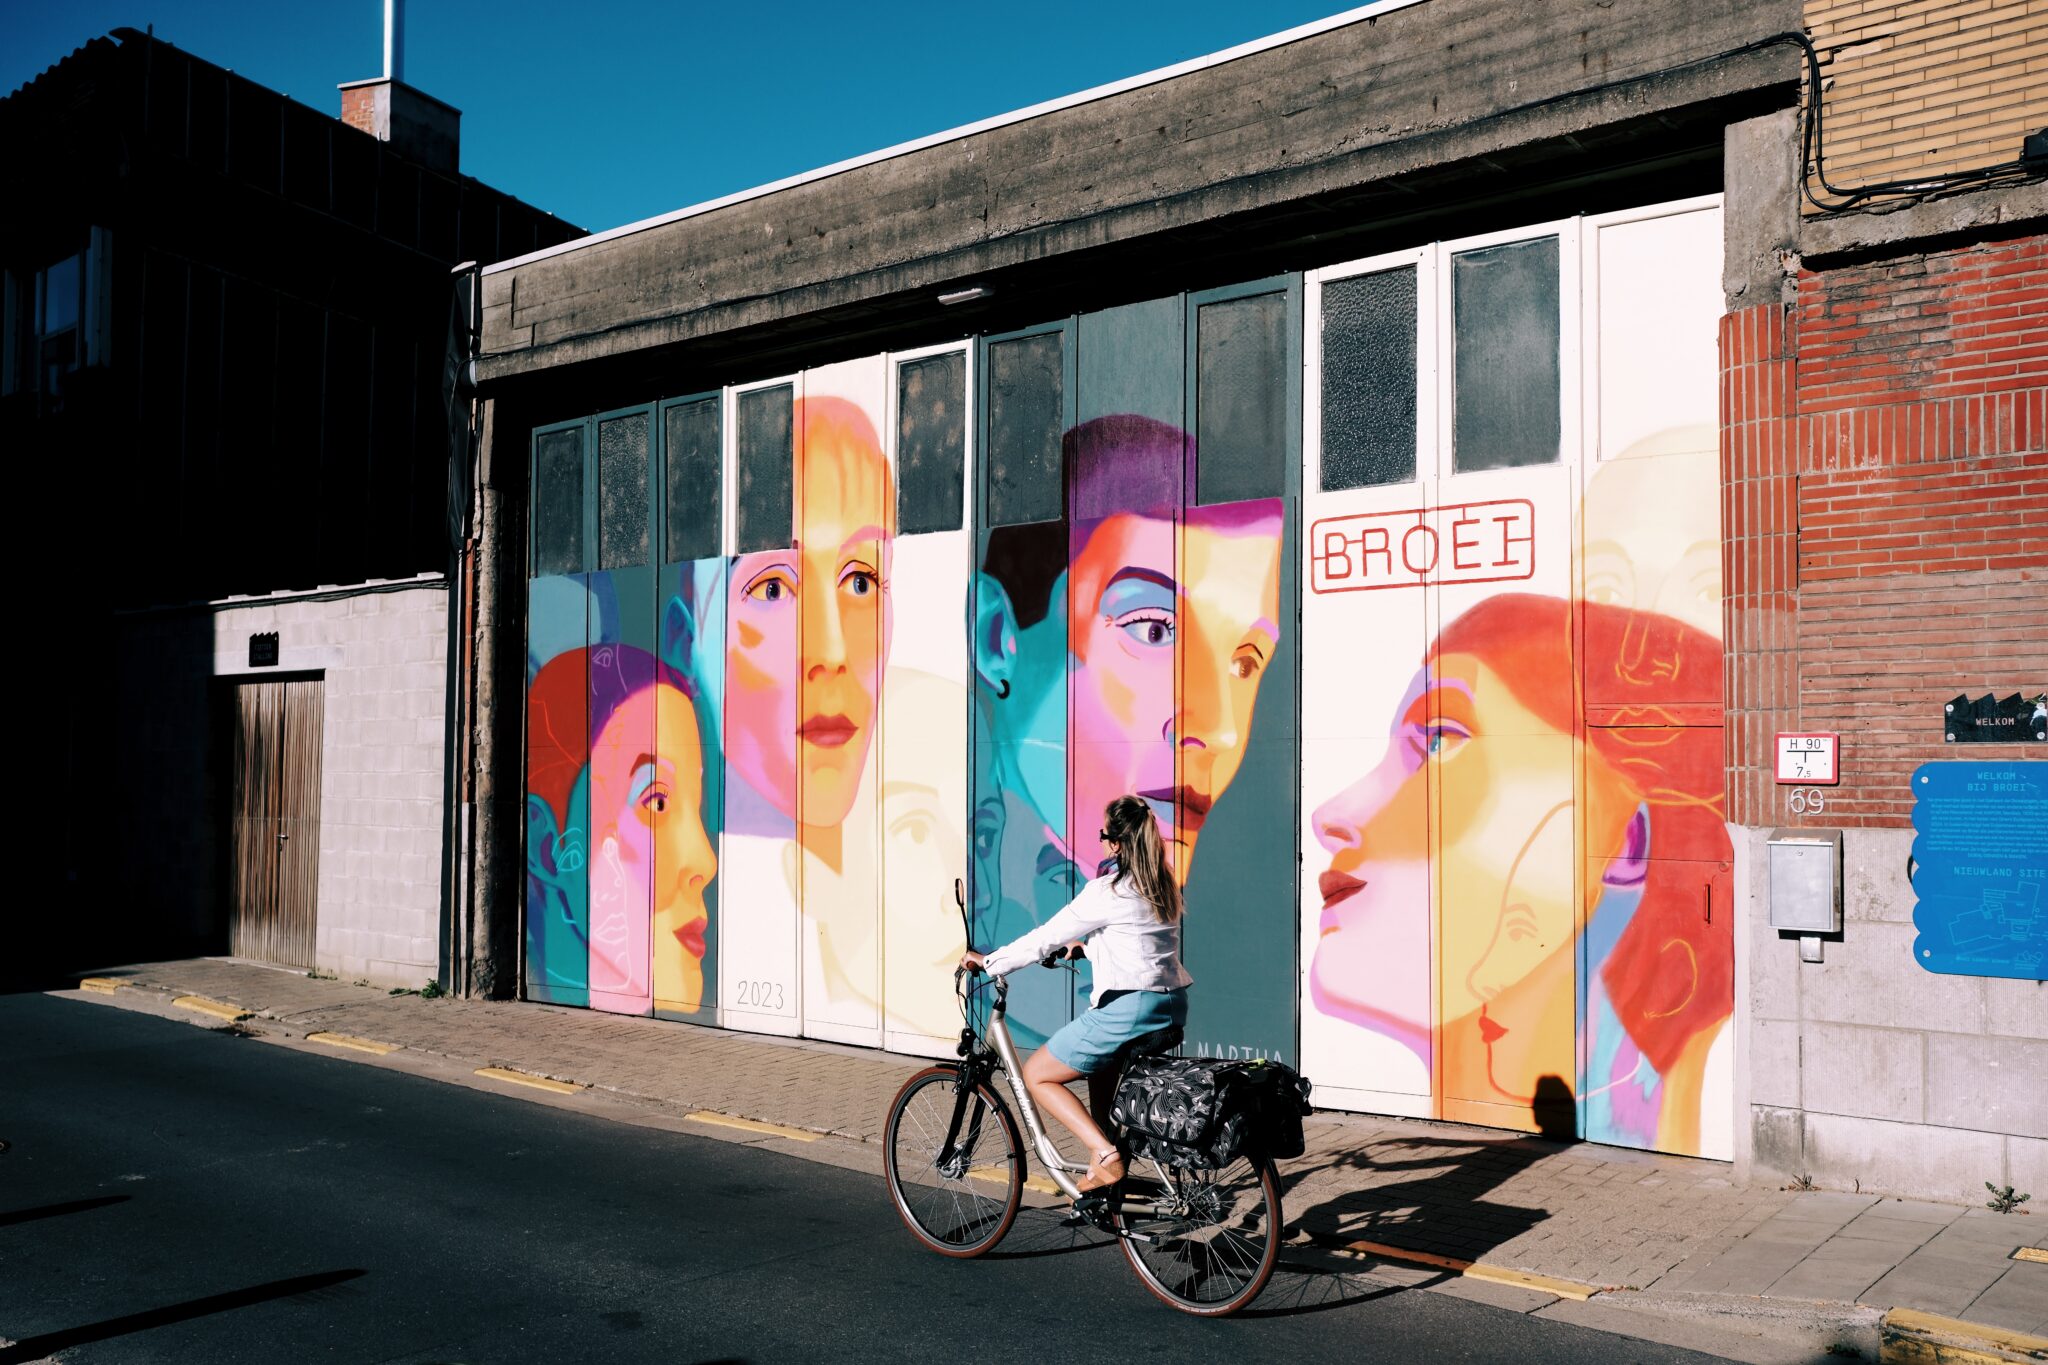 Abenteuer in Gent – Architektur, Menschen, Grachten und Street-Art